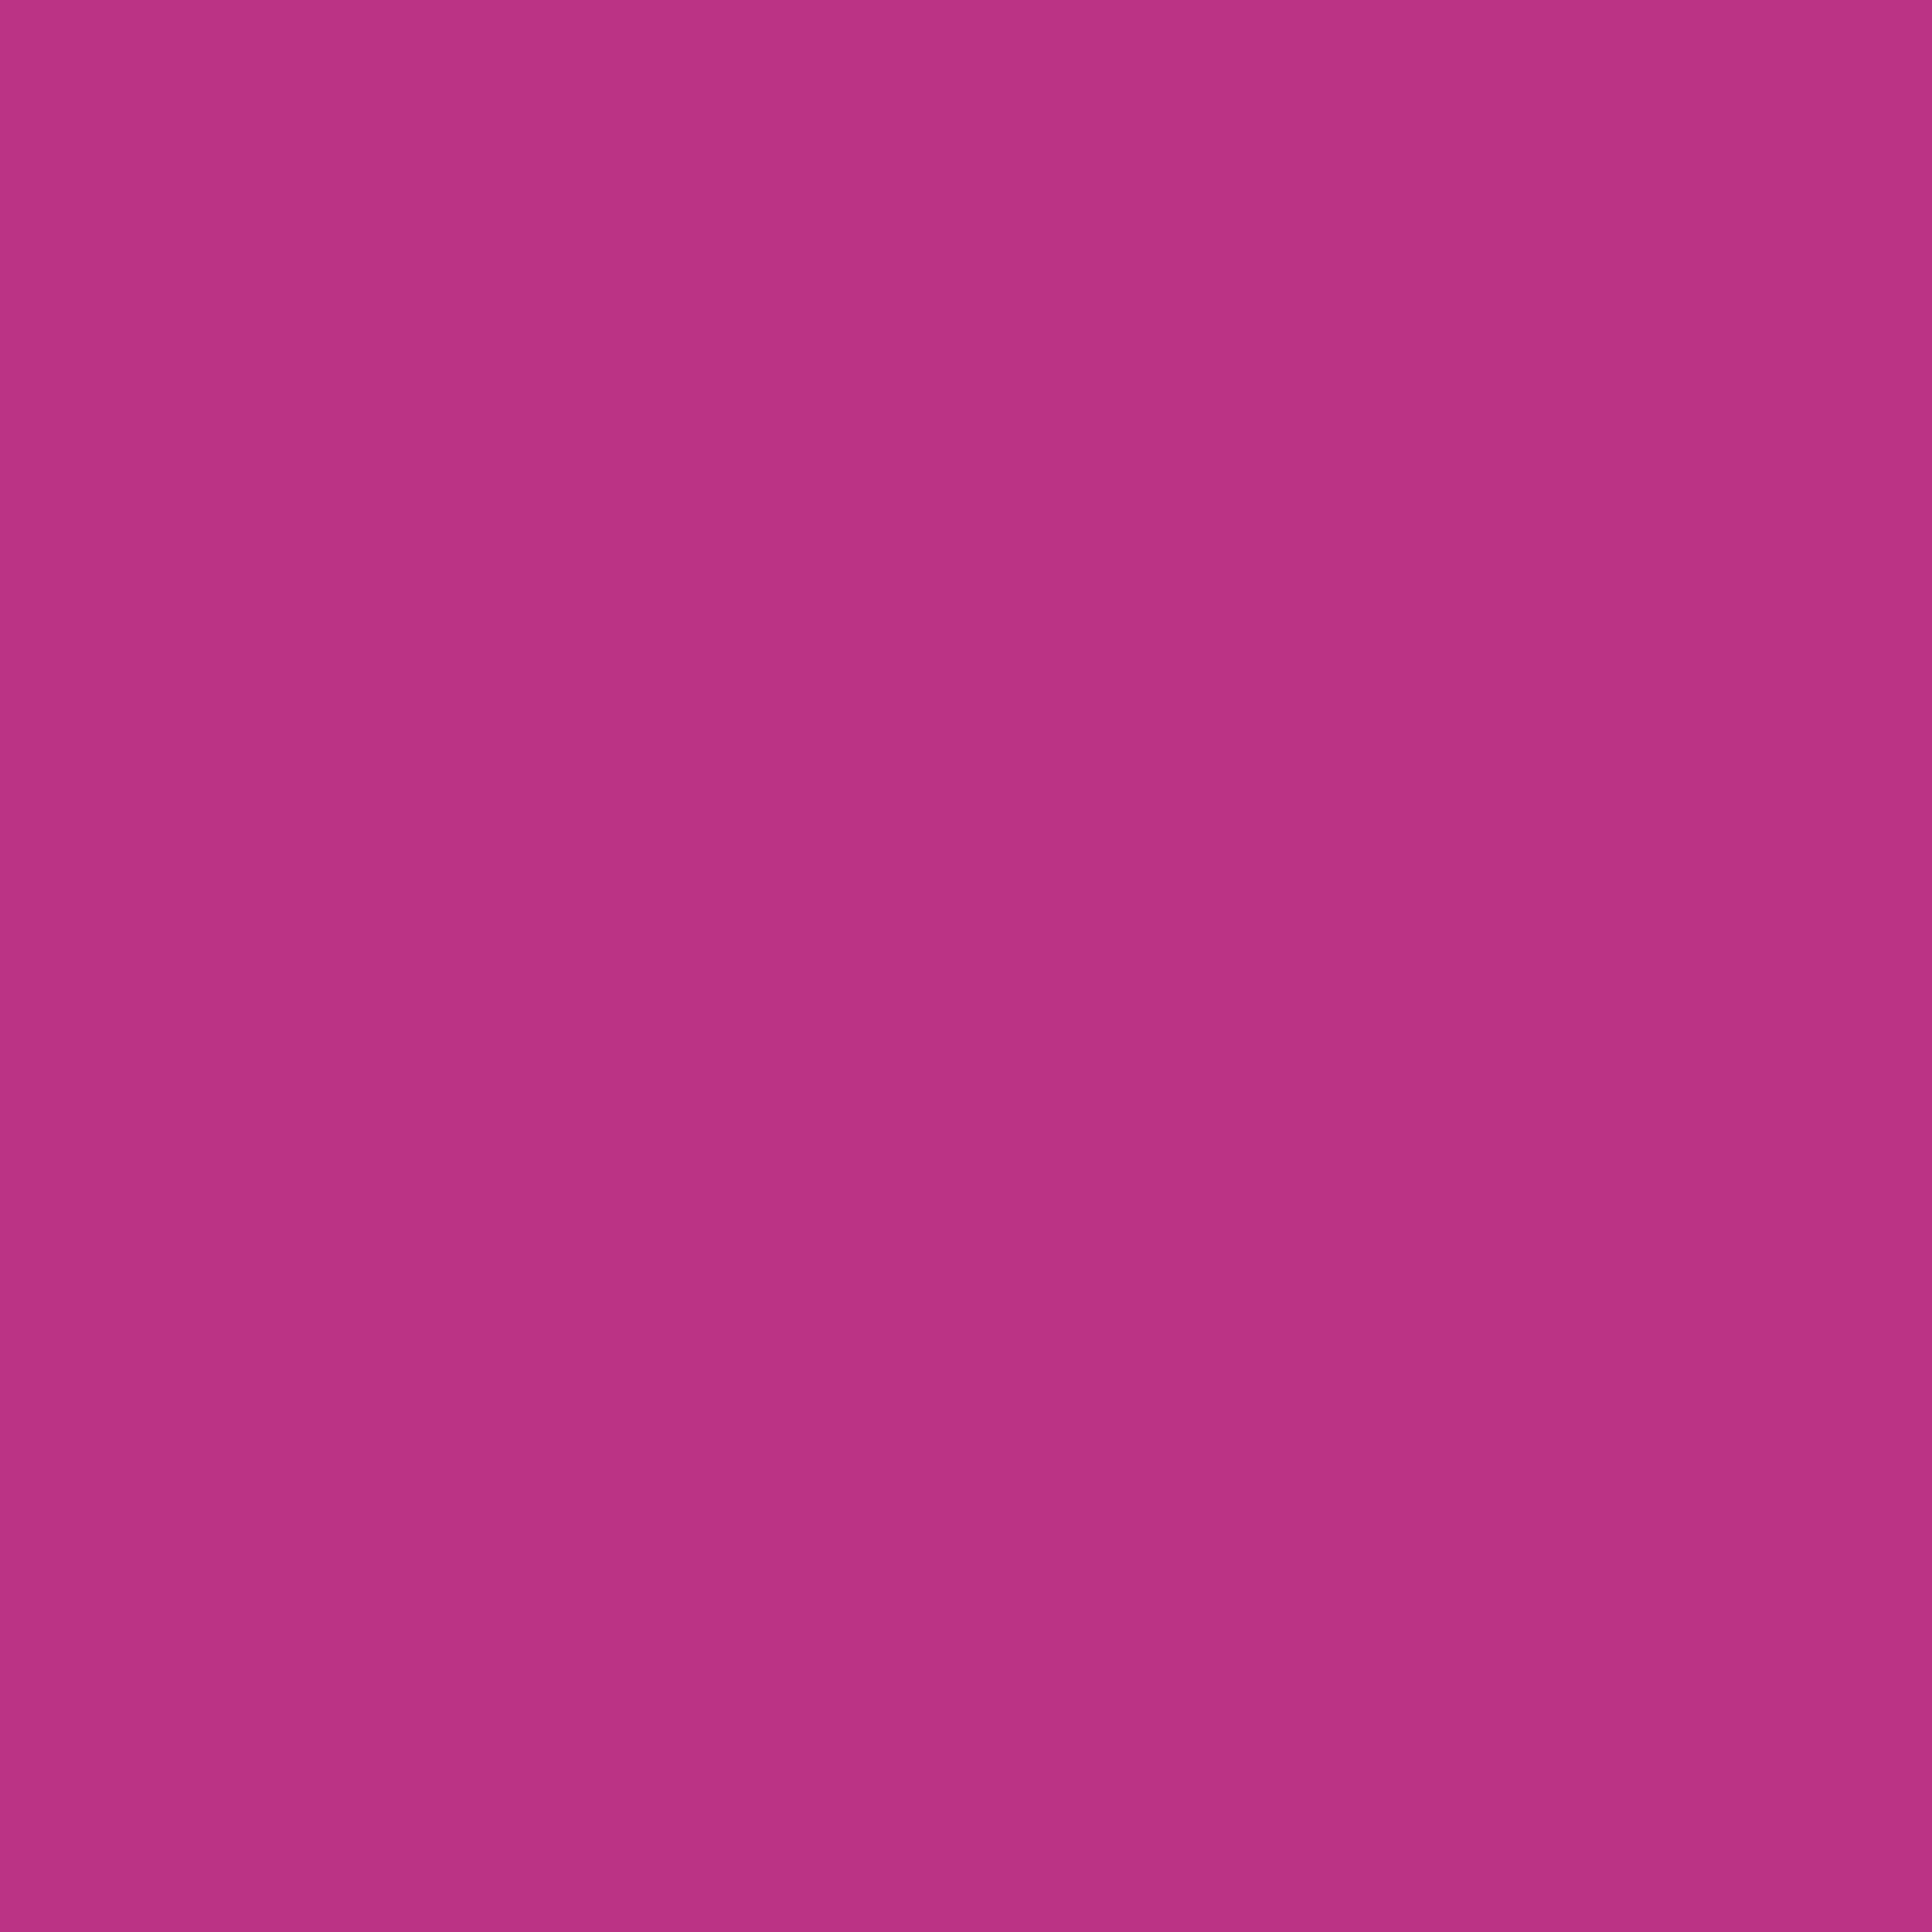 2732x2732 Medium Red-violet Solid Color Background